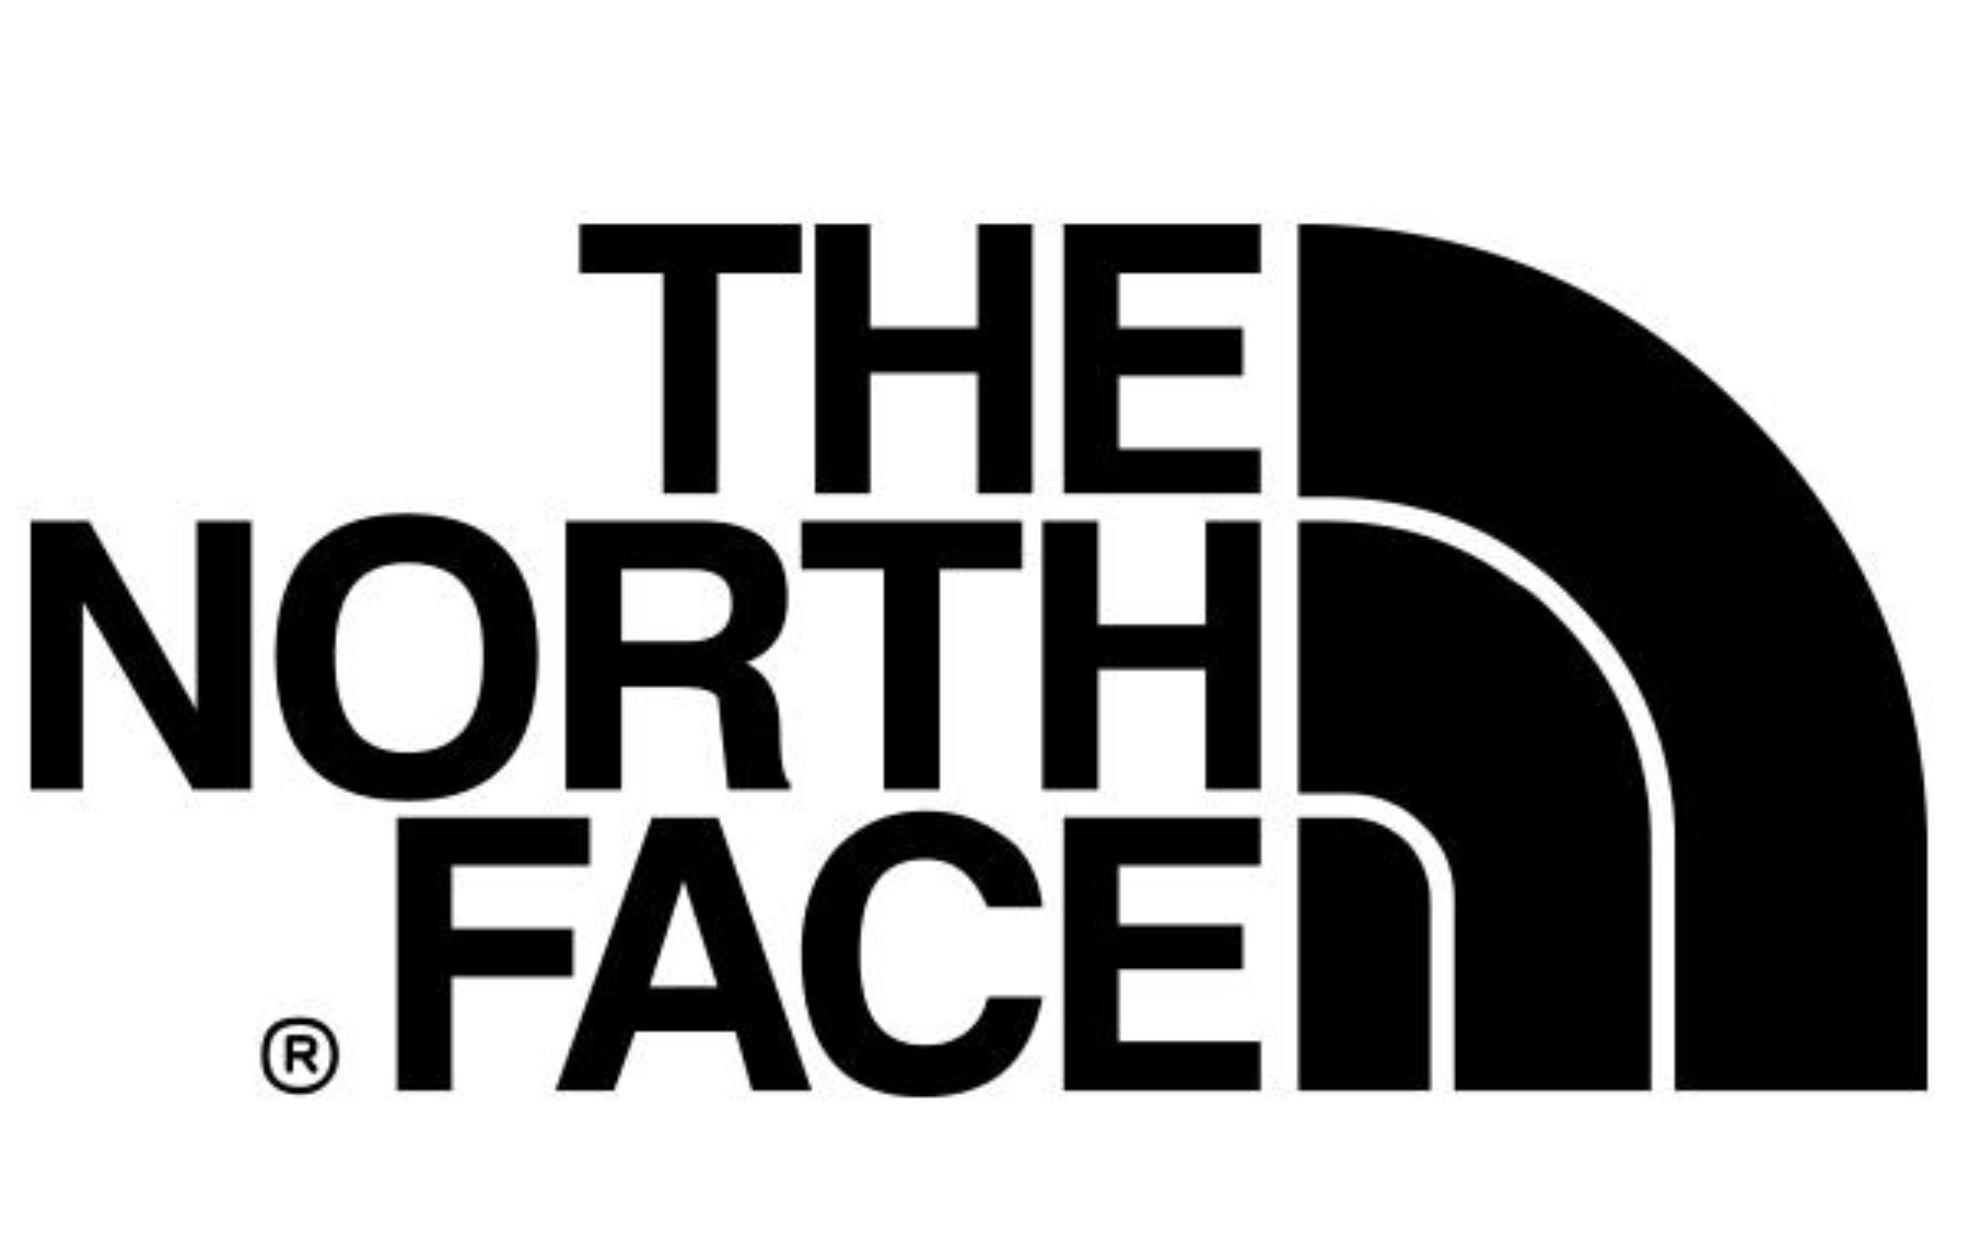 北面logo高清大图 壁纸图片